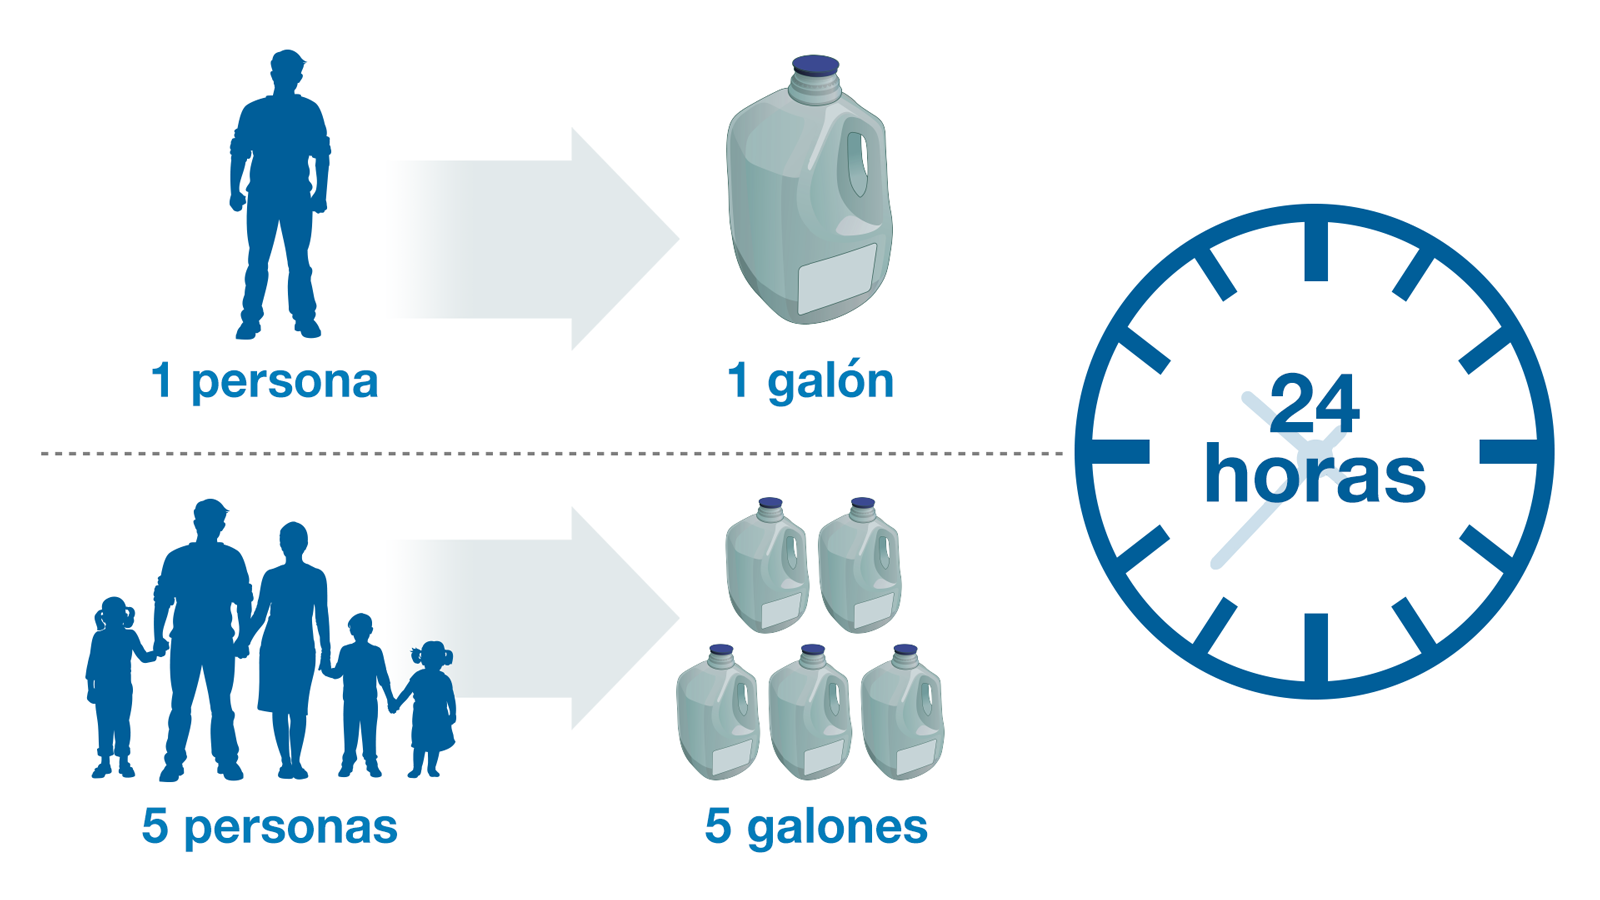 Almacenamiento de agua: ¿Cuánto es suficiente? 24 horas: 1 persona = 1 galón, 5 personas = 5 galones